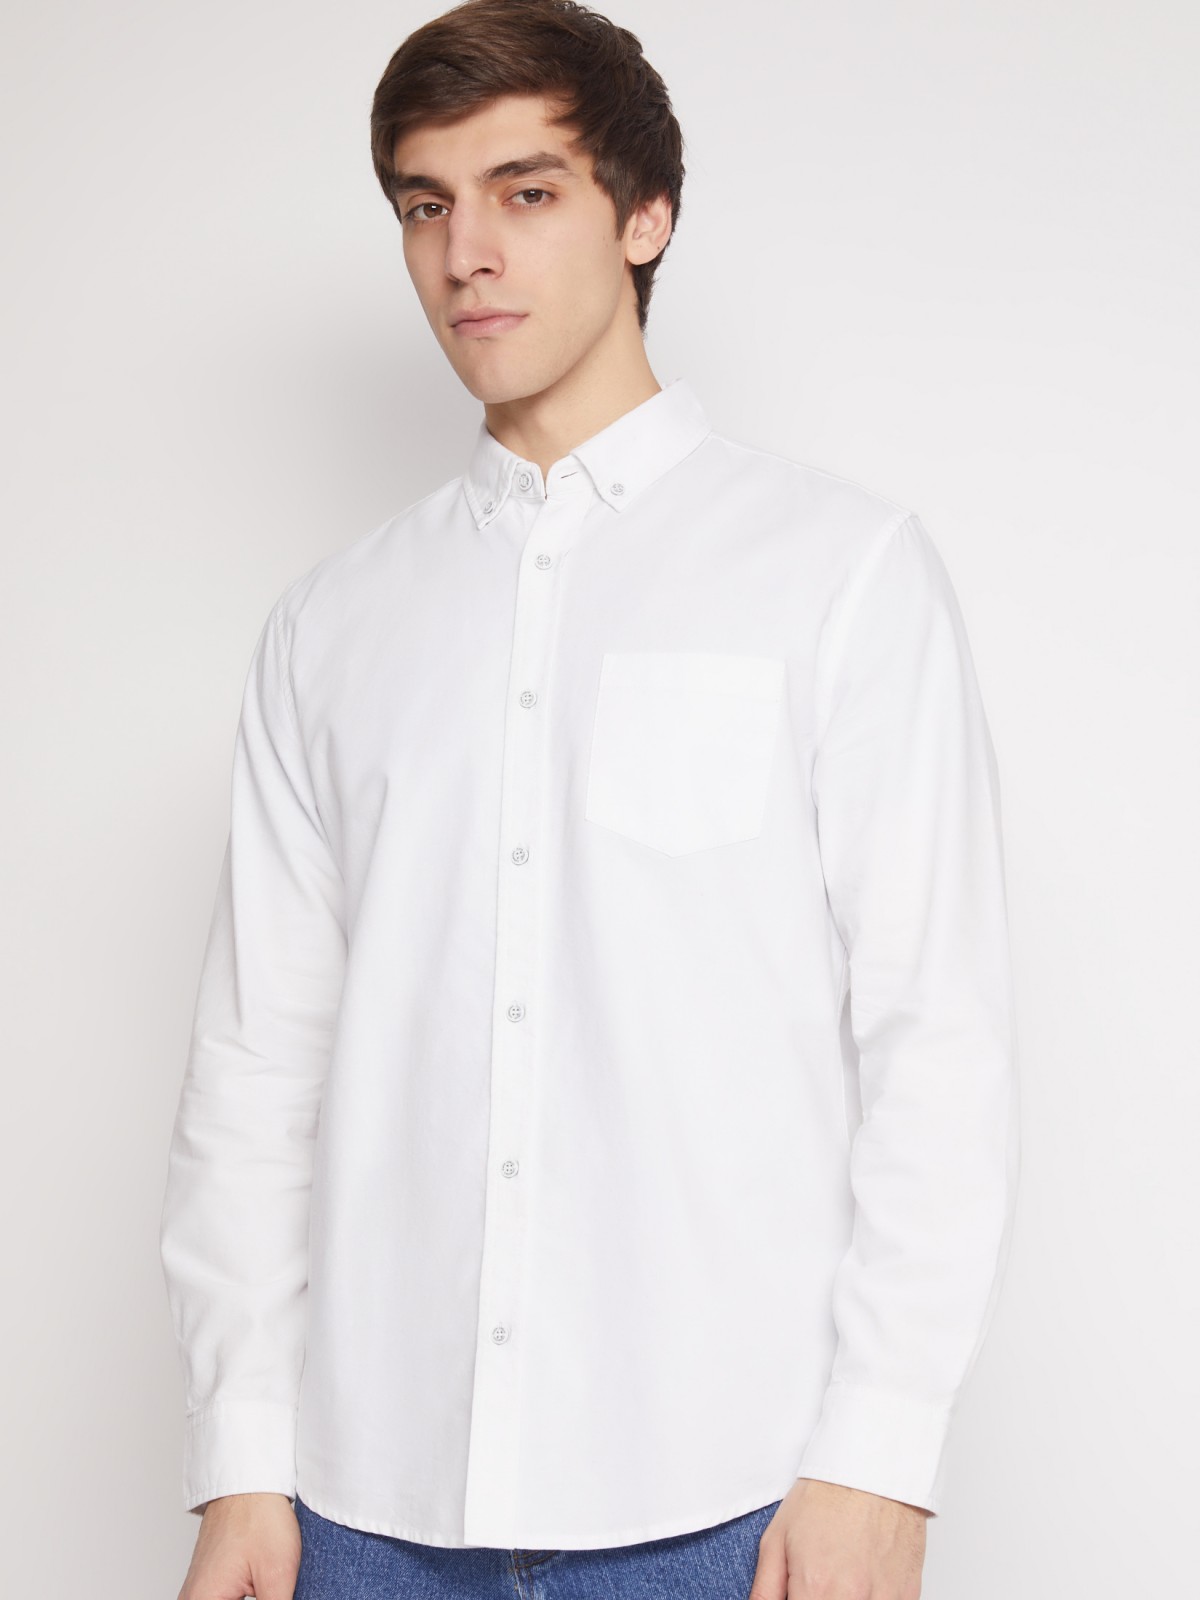 Хлопковая рубашка с длинным рукавом zolla 012122191013, цвет белый, размер M - фото 6